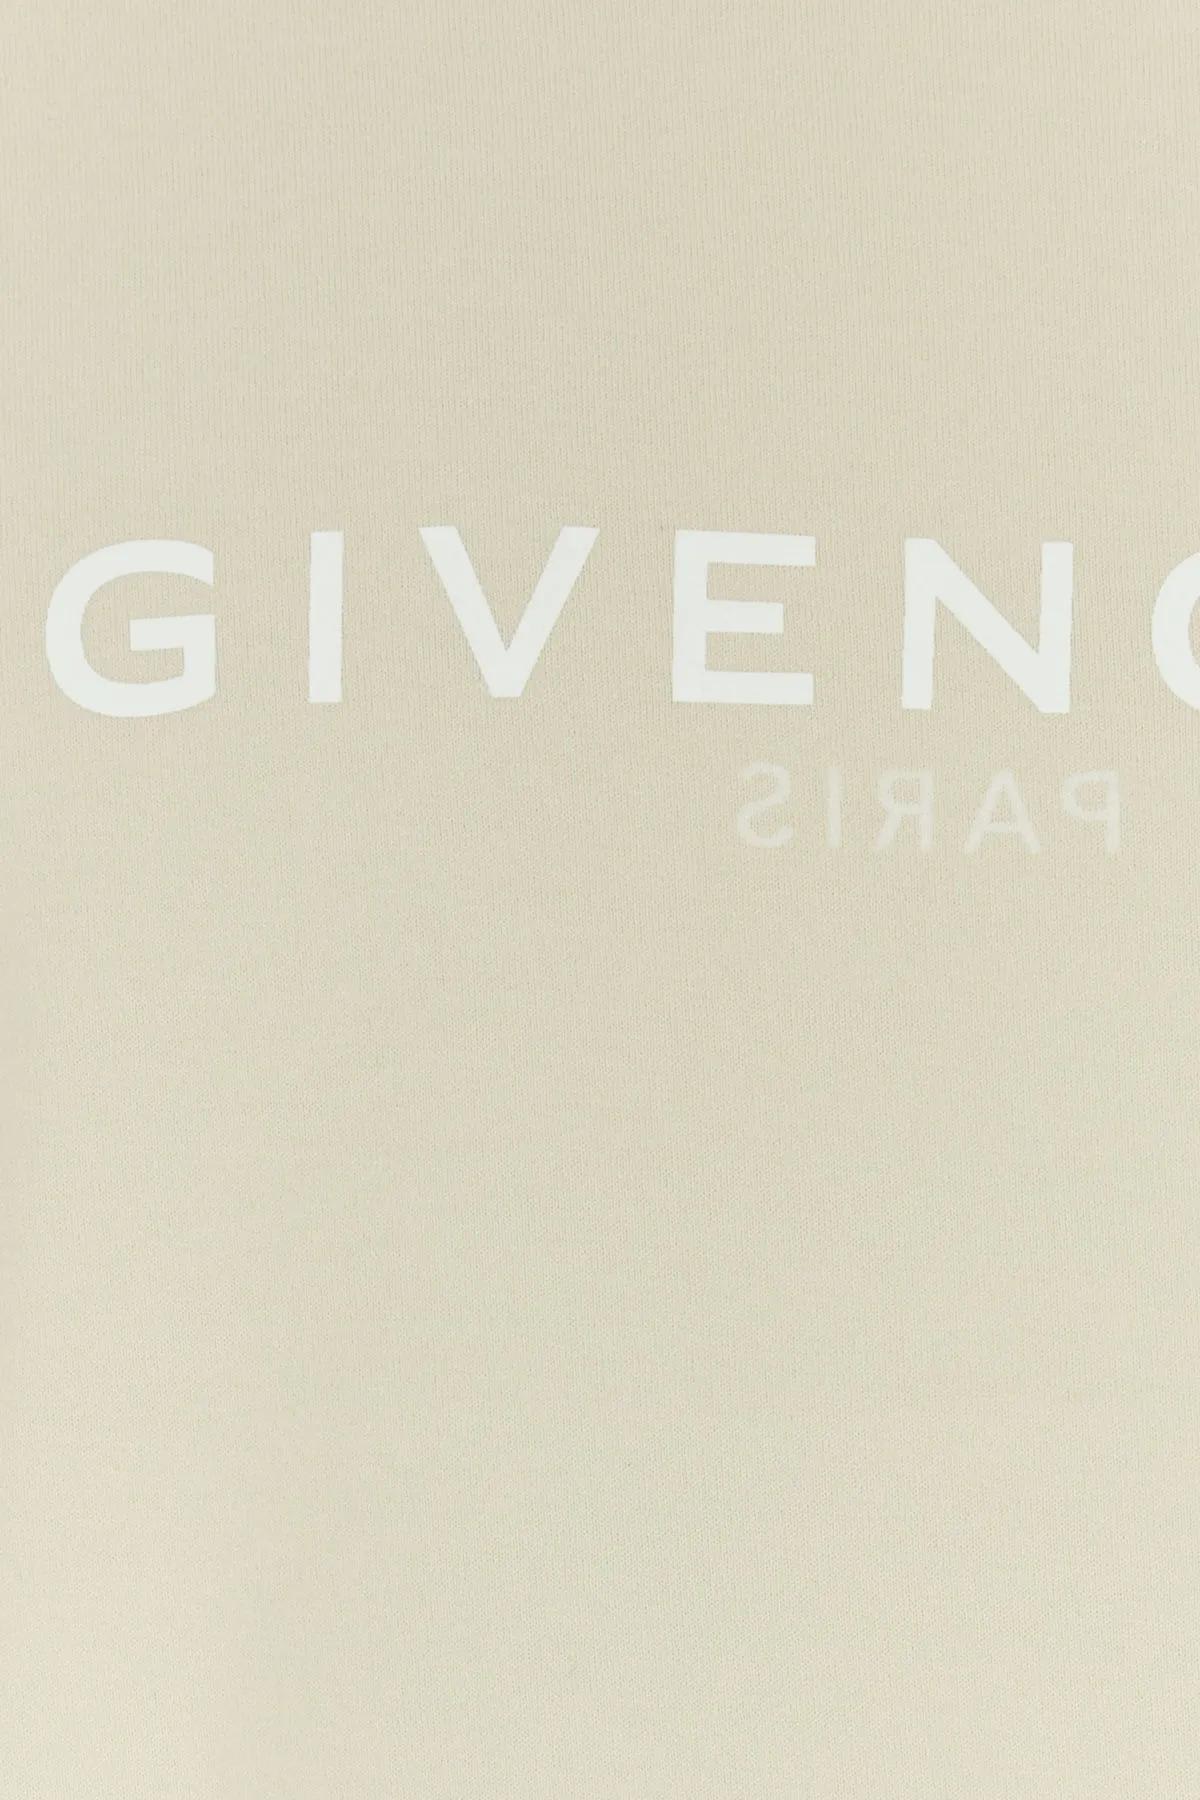 Shop Givenchy Sand Cotton T-shirt